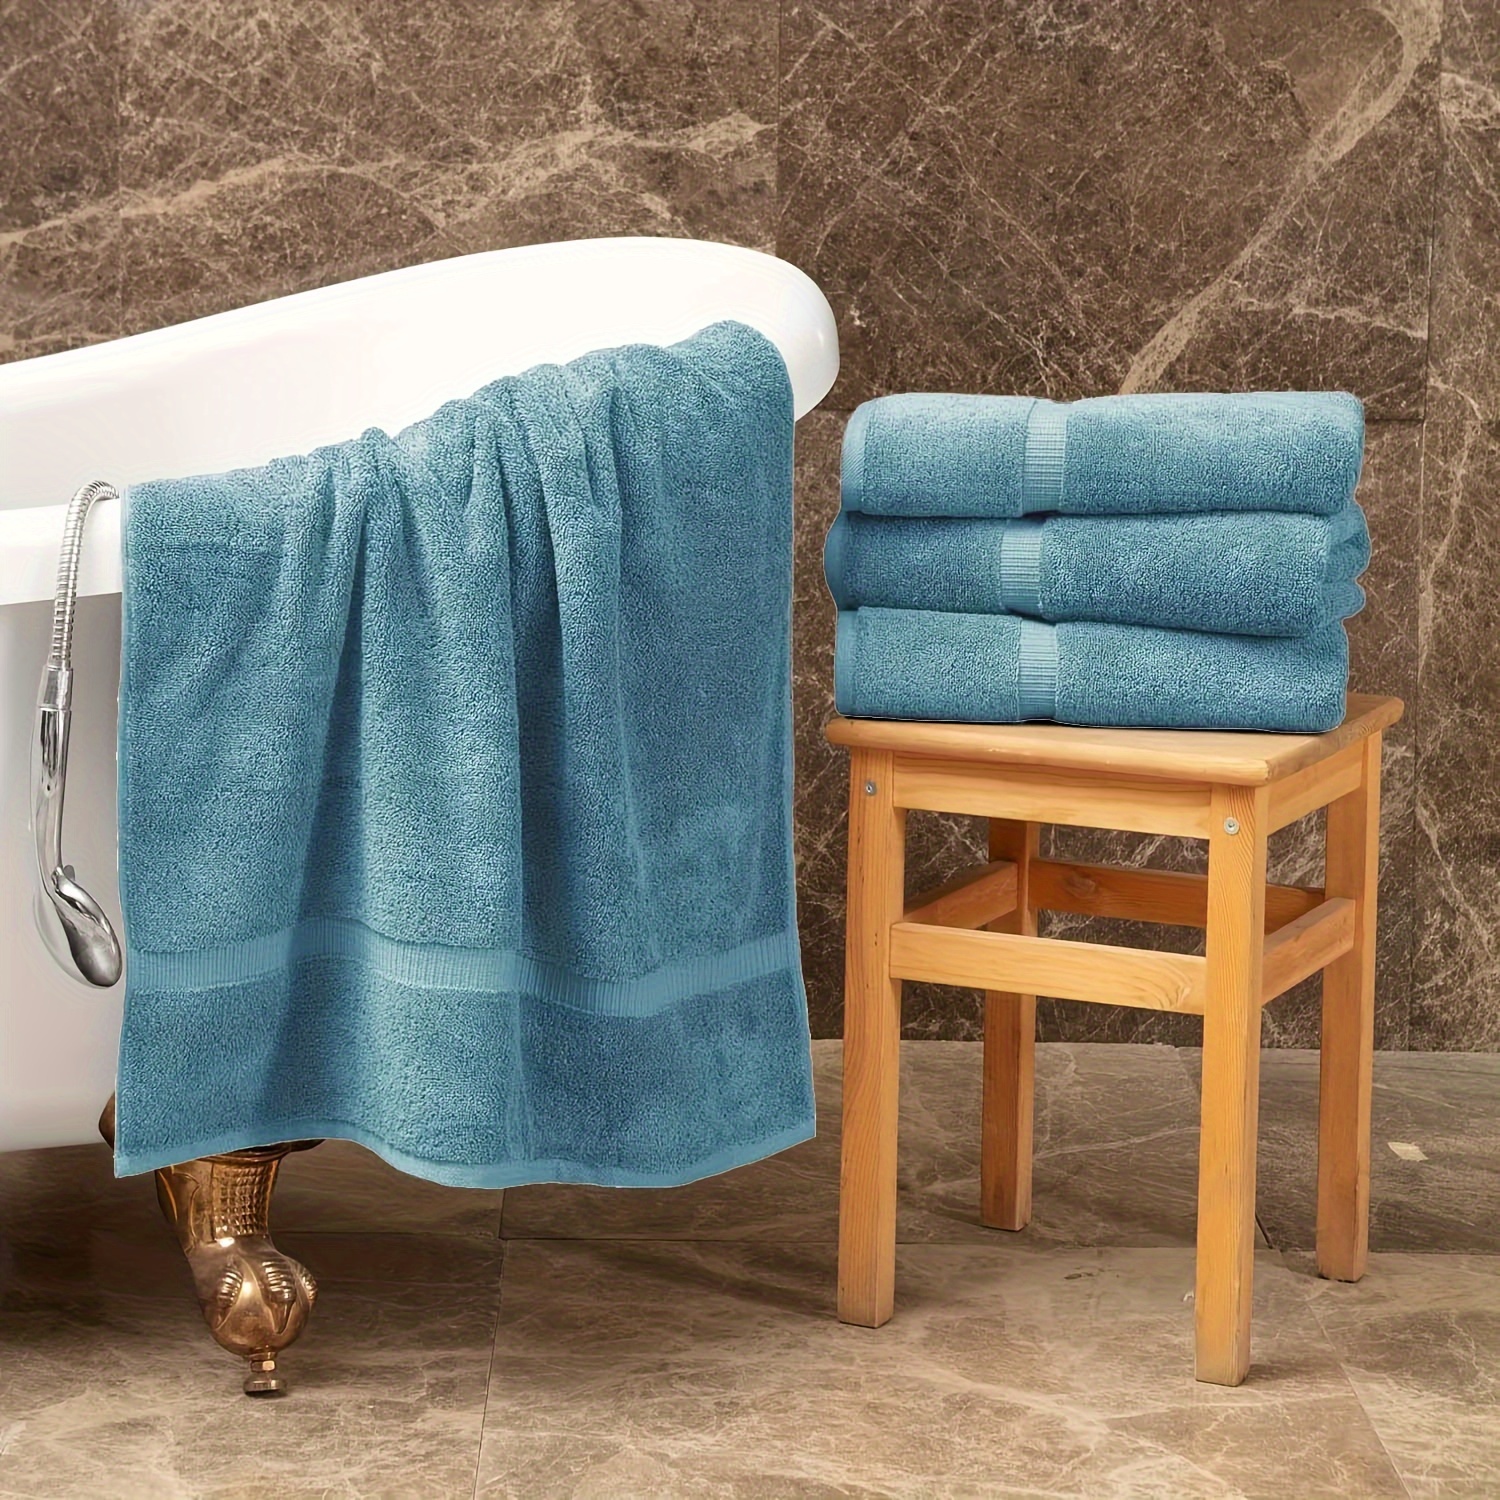 Juego de 8 toallas de baño extra grandes, 2 toallas de baño de tamaño  grande, 2 toallas de mano, 4 toallas pequeñas, toallas de baño de  microfibra